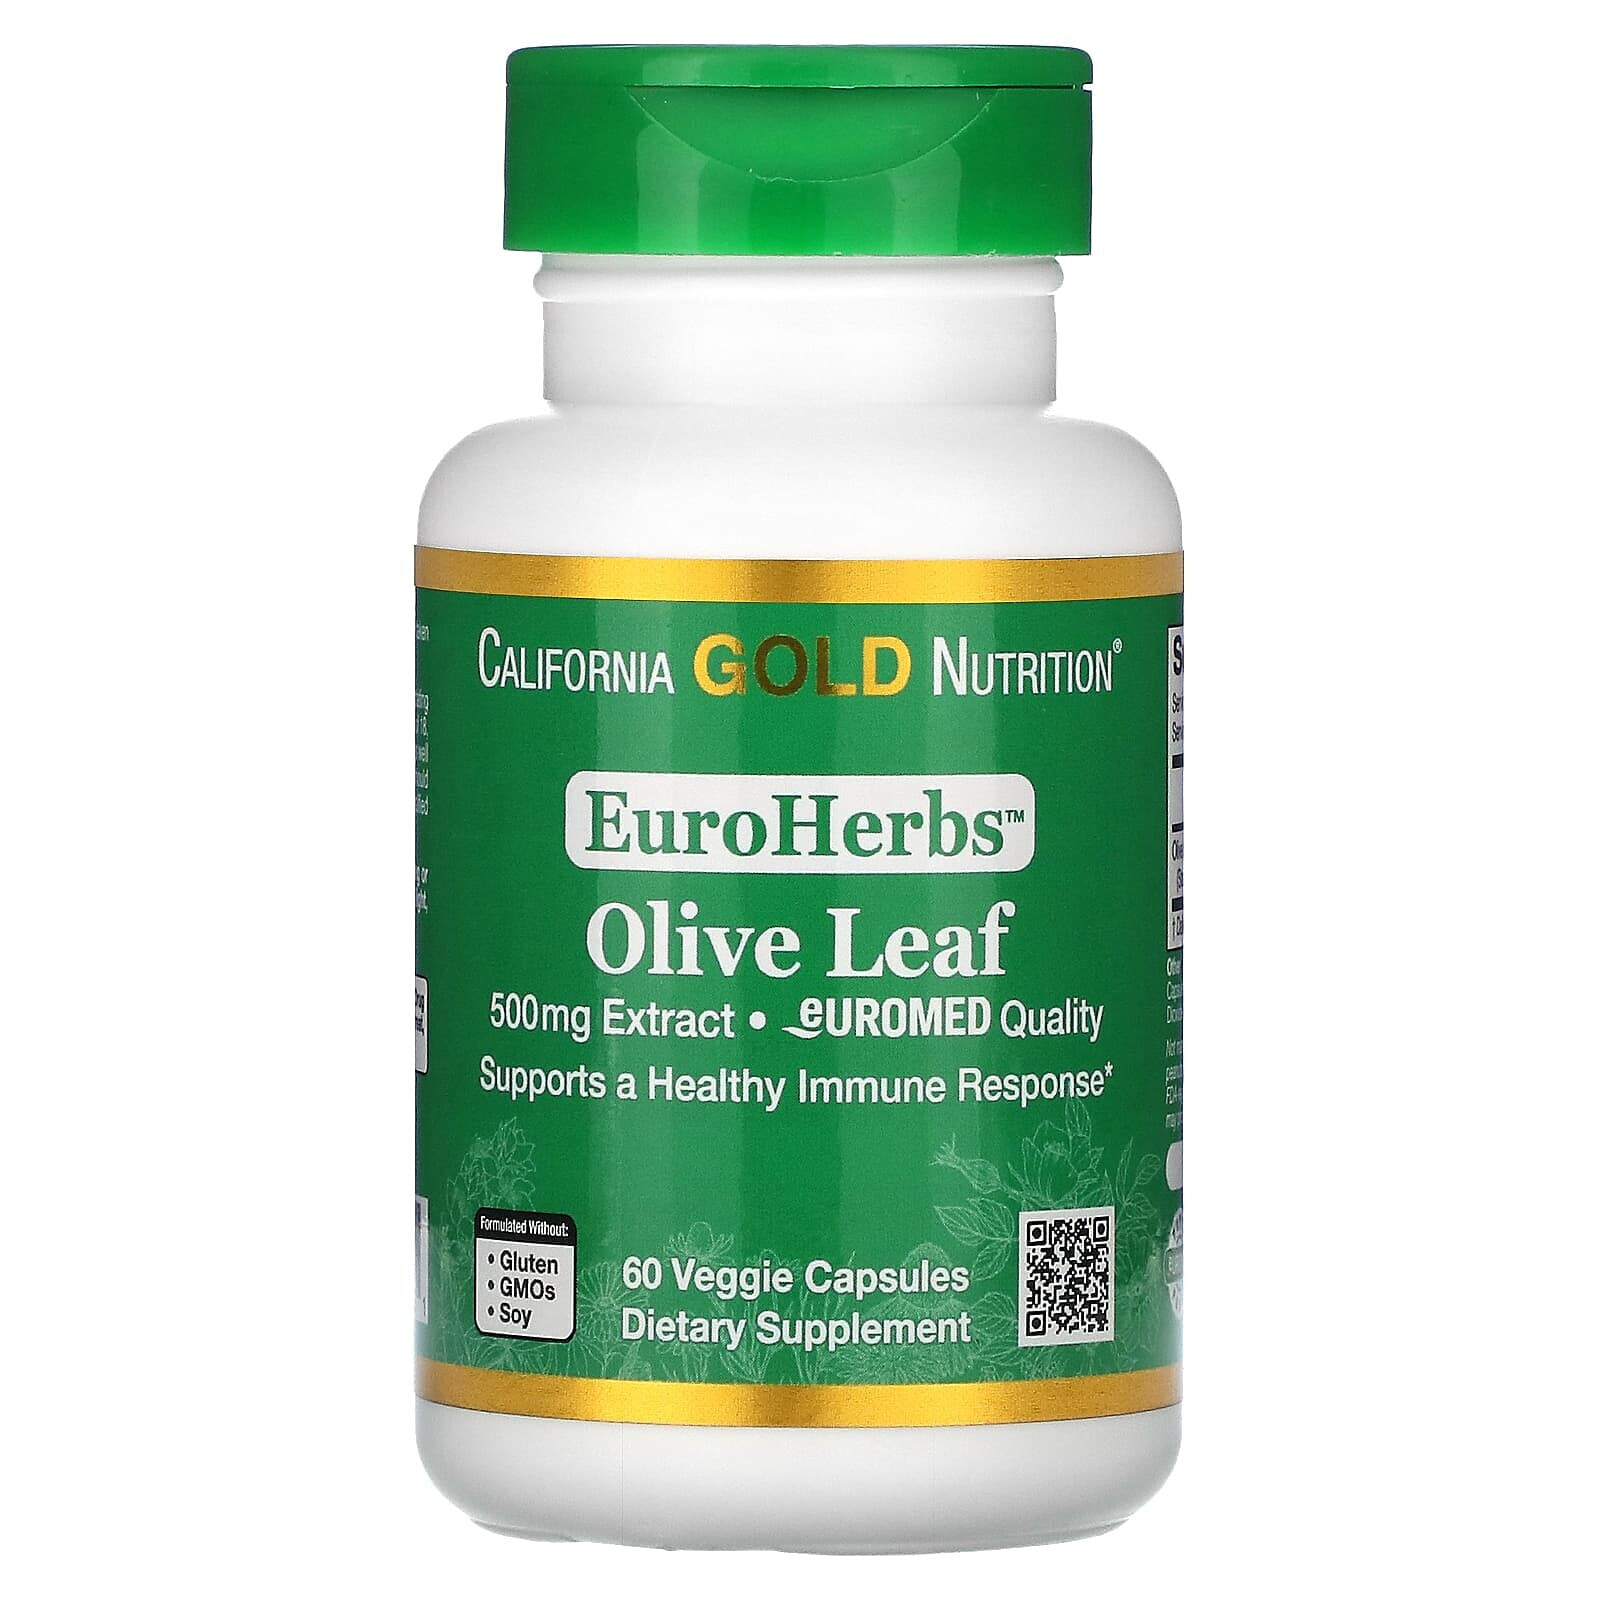 California Gold Nutrition, Экстракт из листьев оливкового дерева, EuroHerbs, европейское качество, 500 мг, 180 растительных капсул